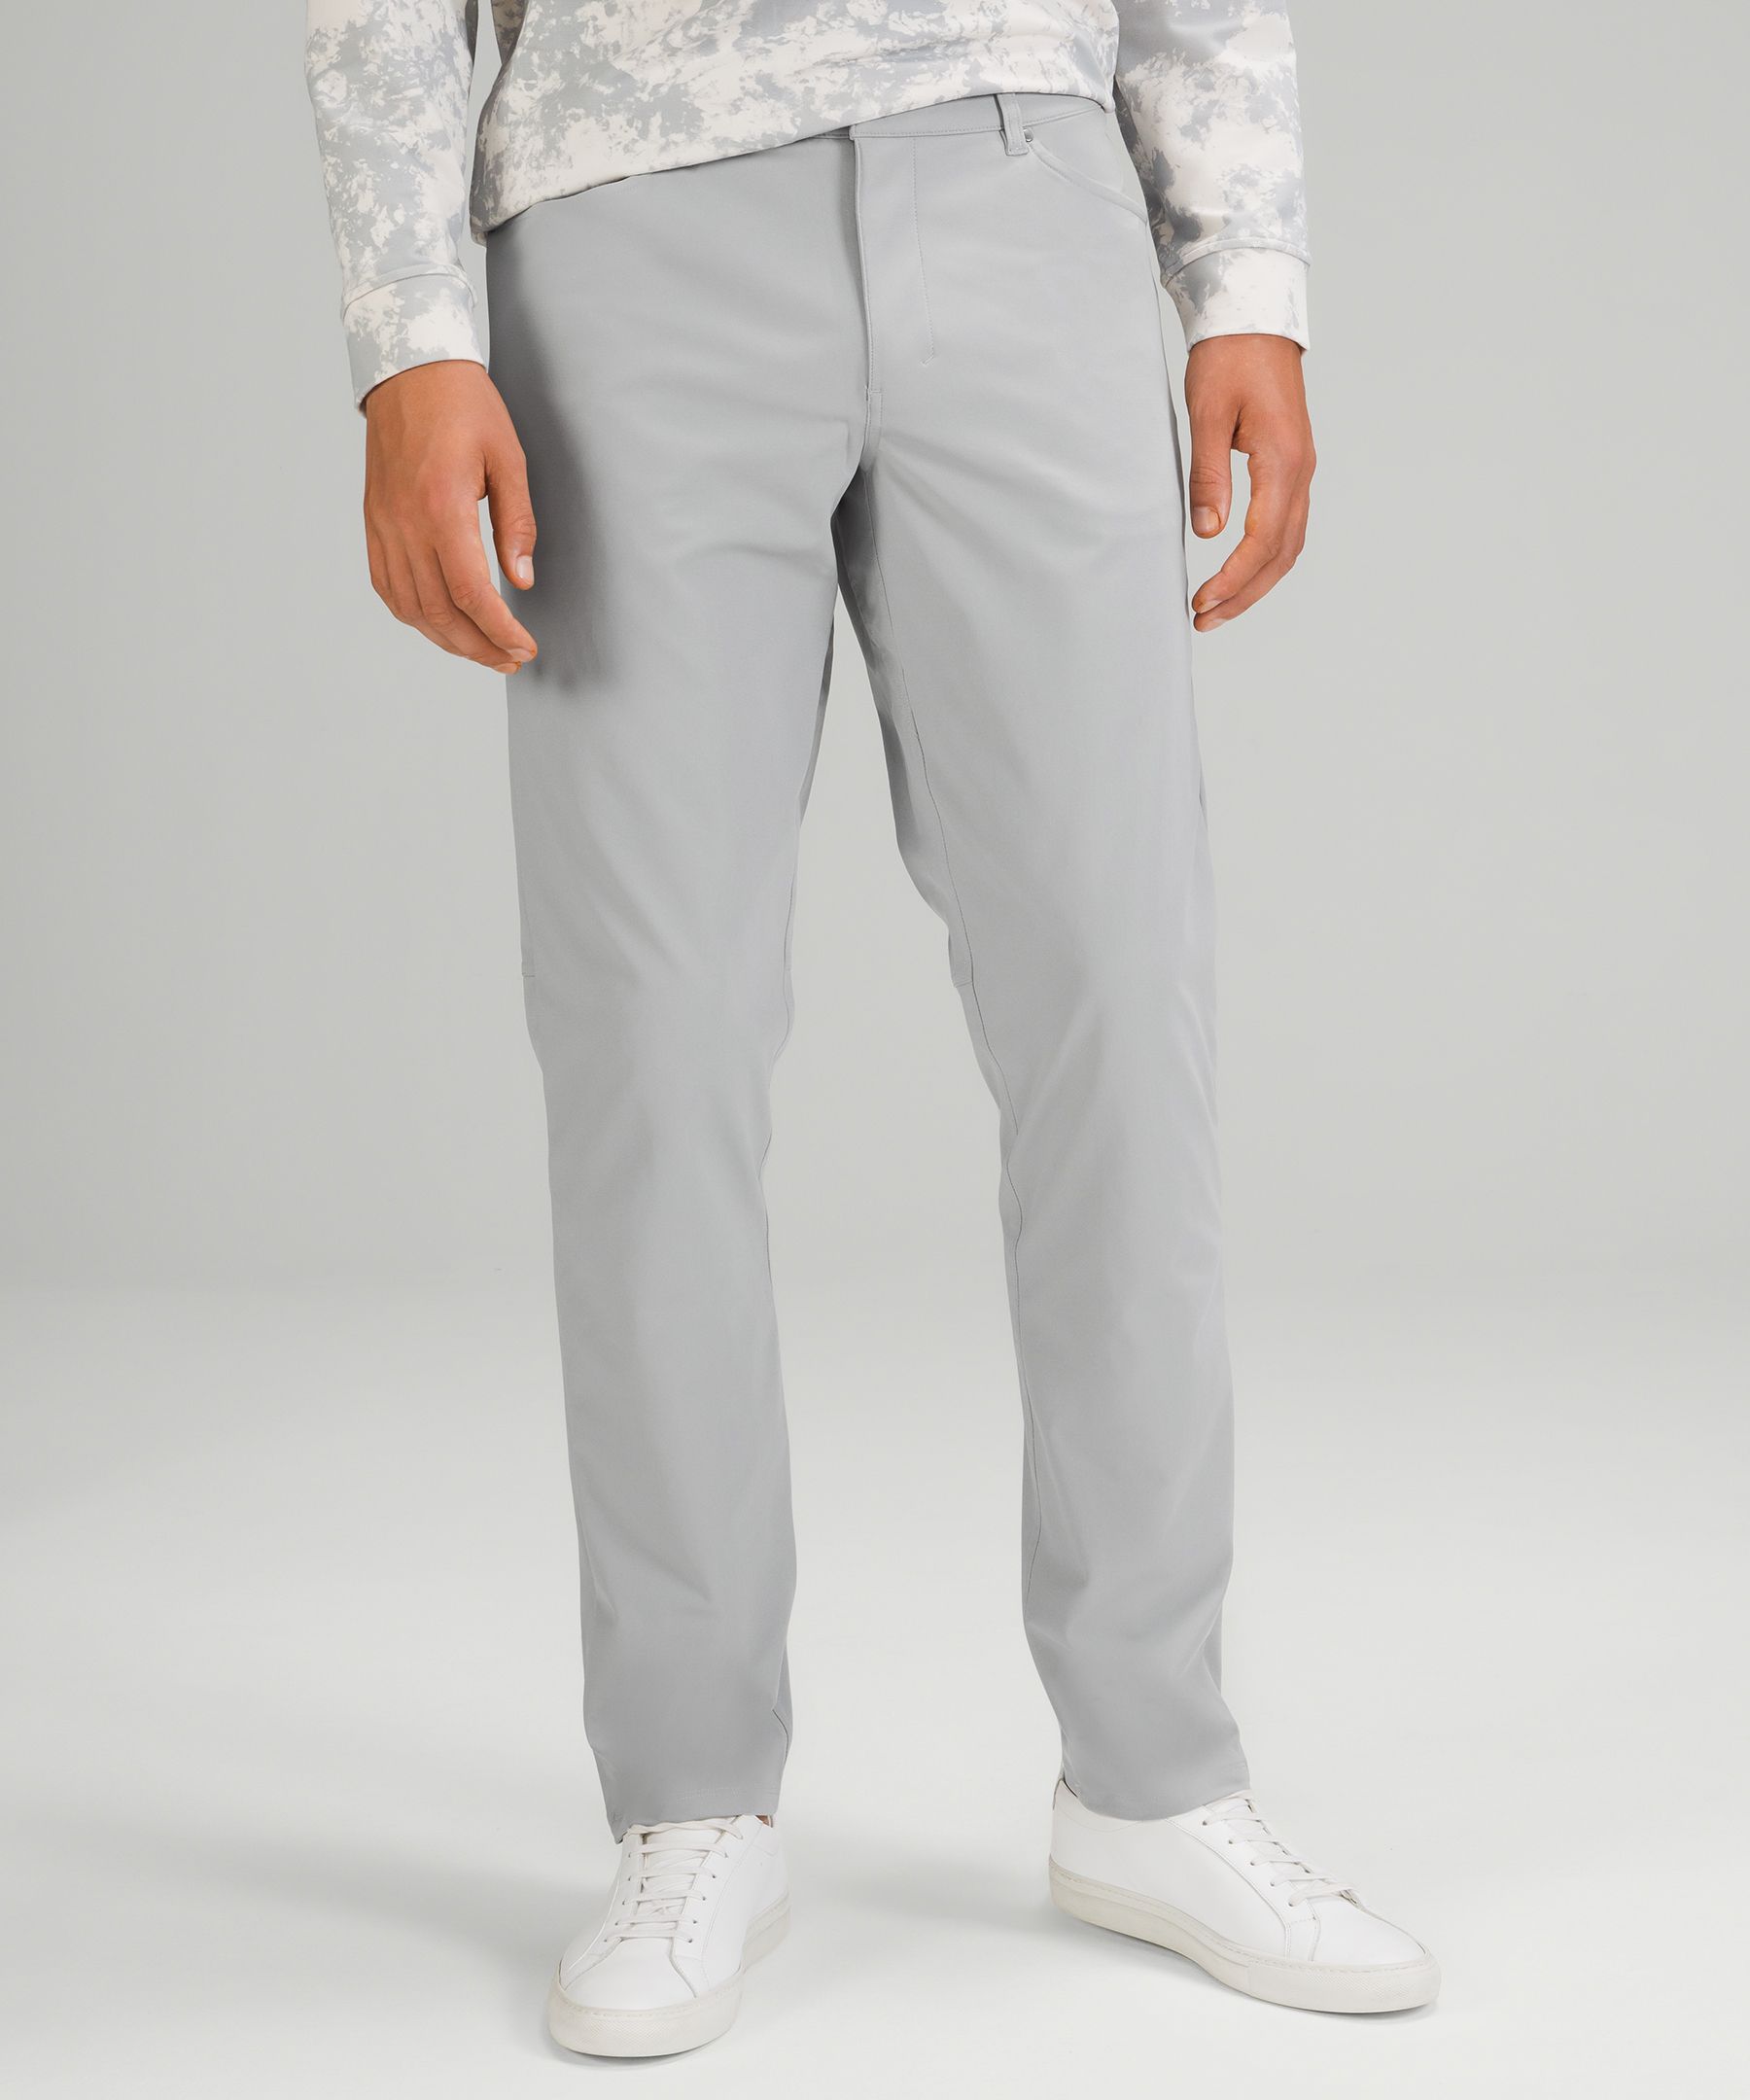 lululemon athletica, Pants, Lululemon Abc Pant Classic Color Beige Mens  Size 34 Style M5426s